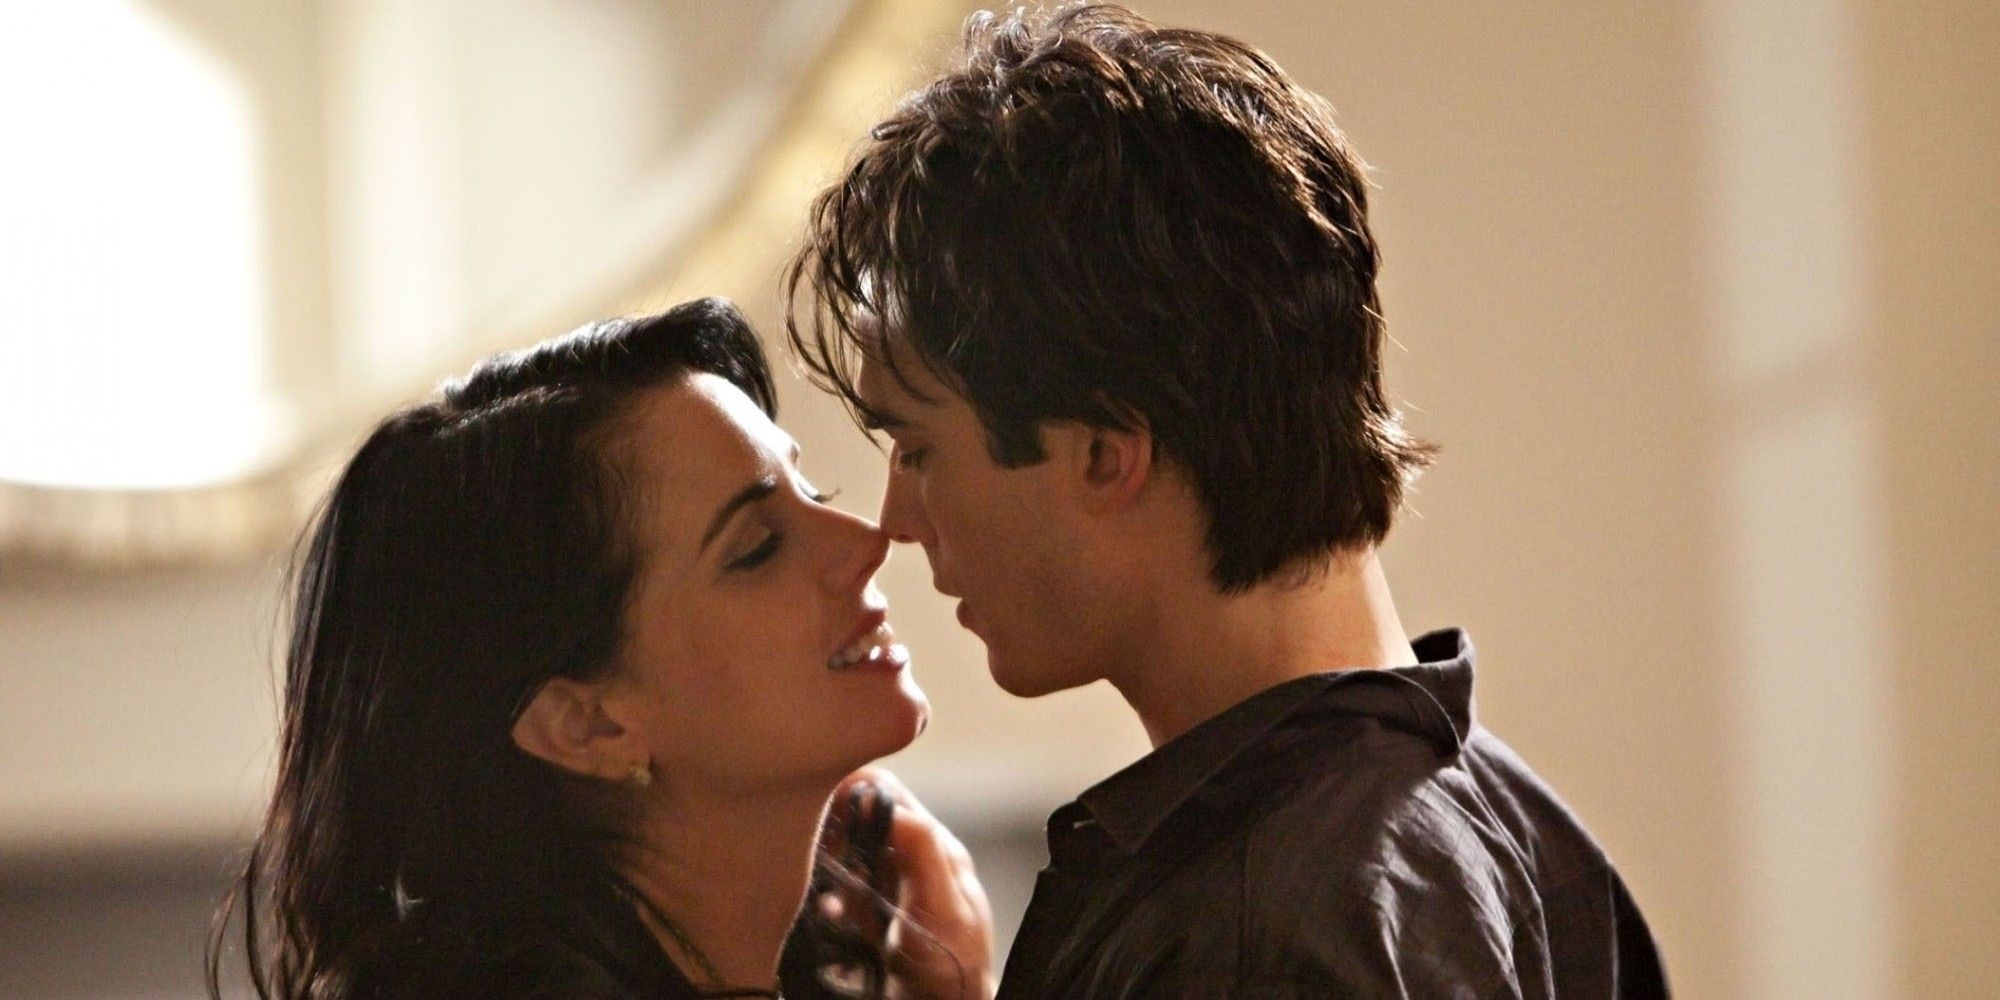 Damon kisses Isobel in the Vampire Diaries